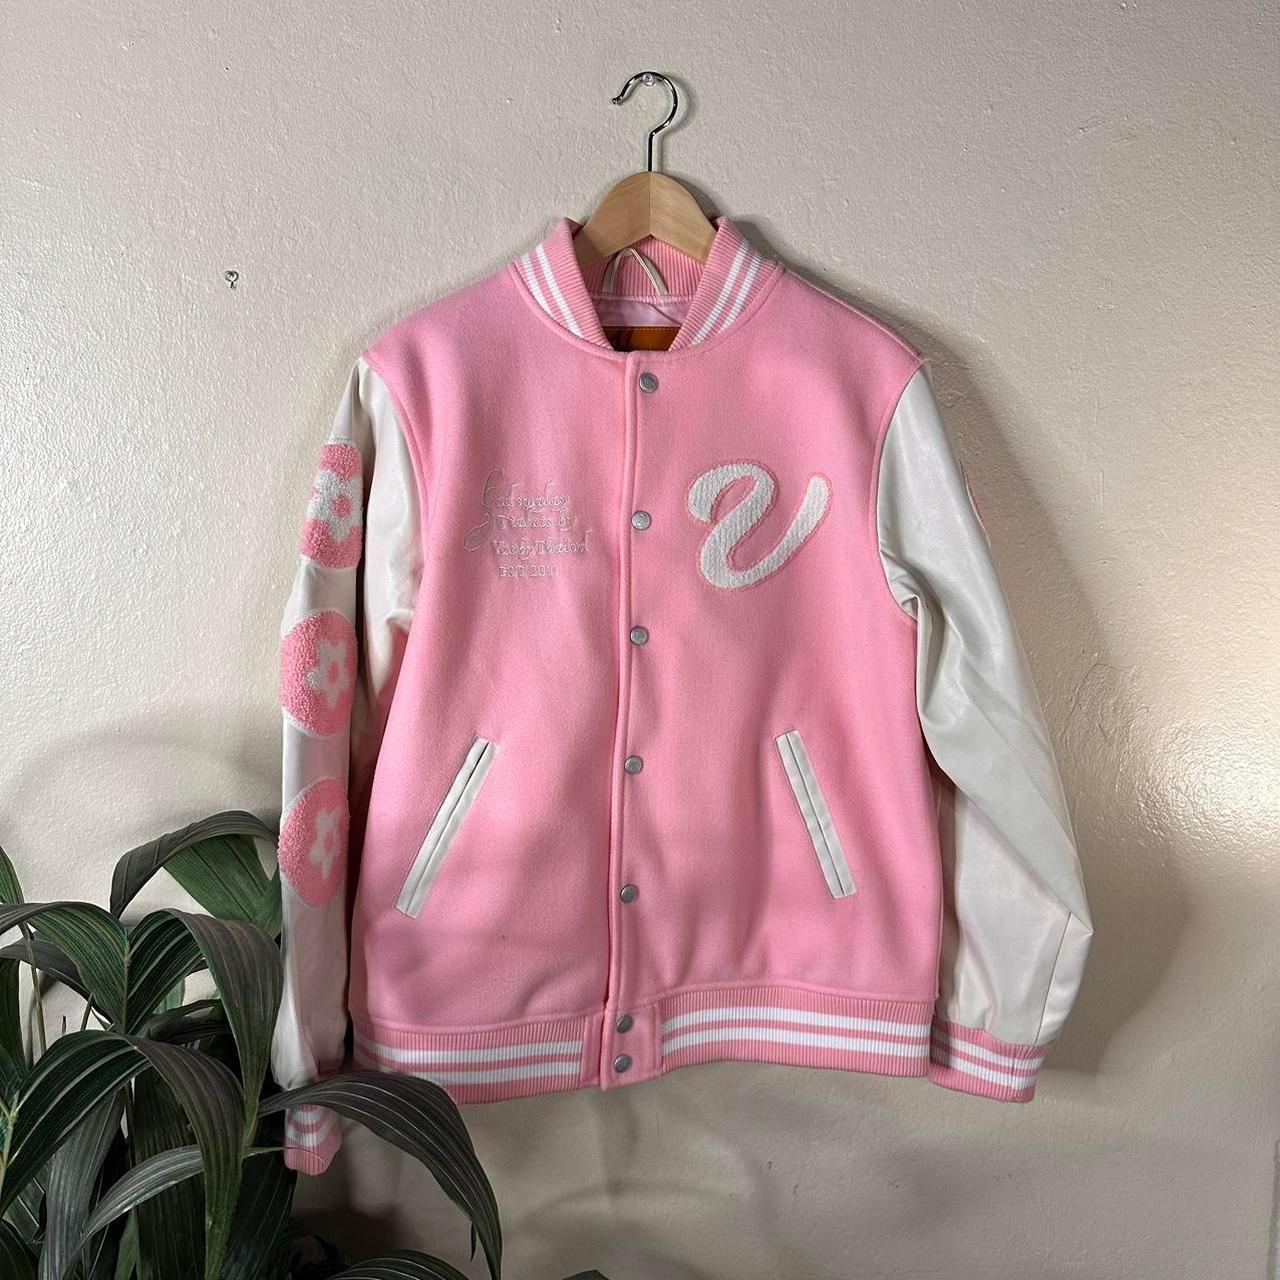 vandy the pink jacket